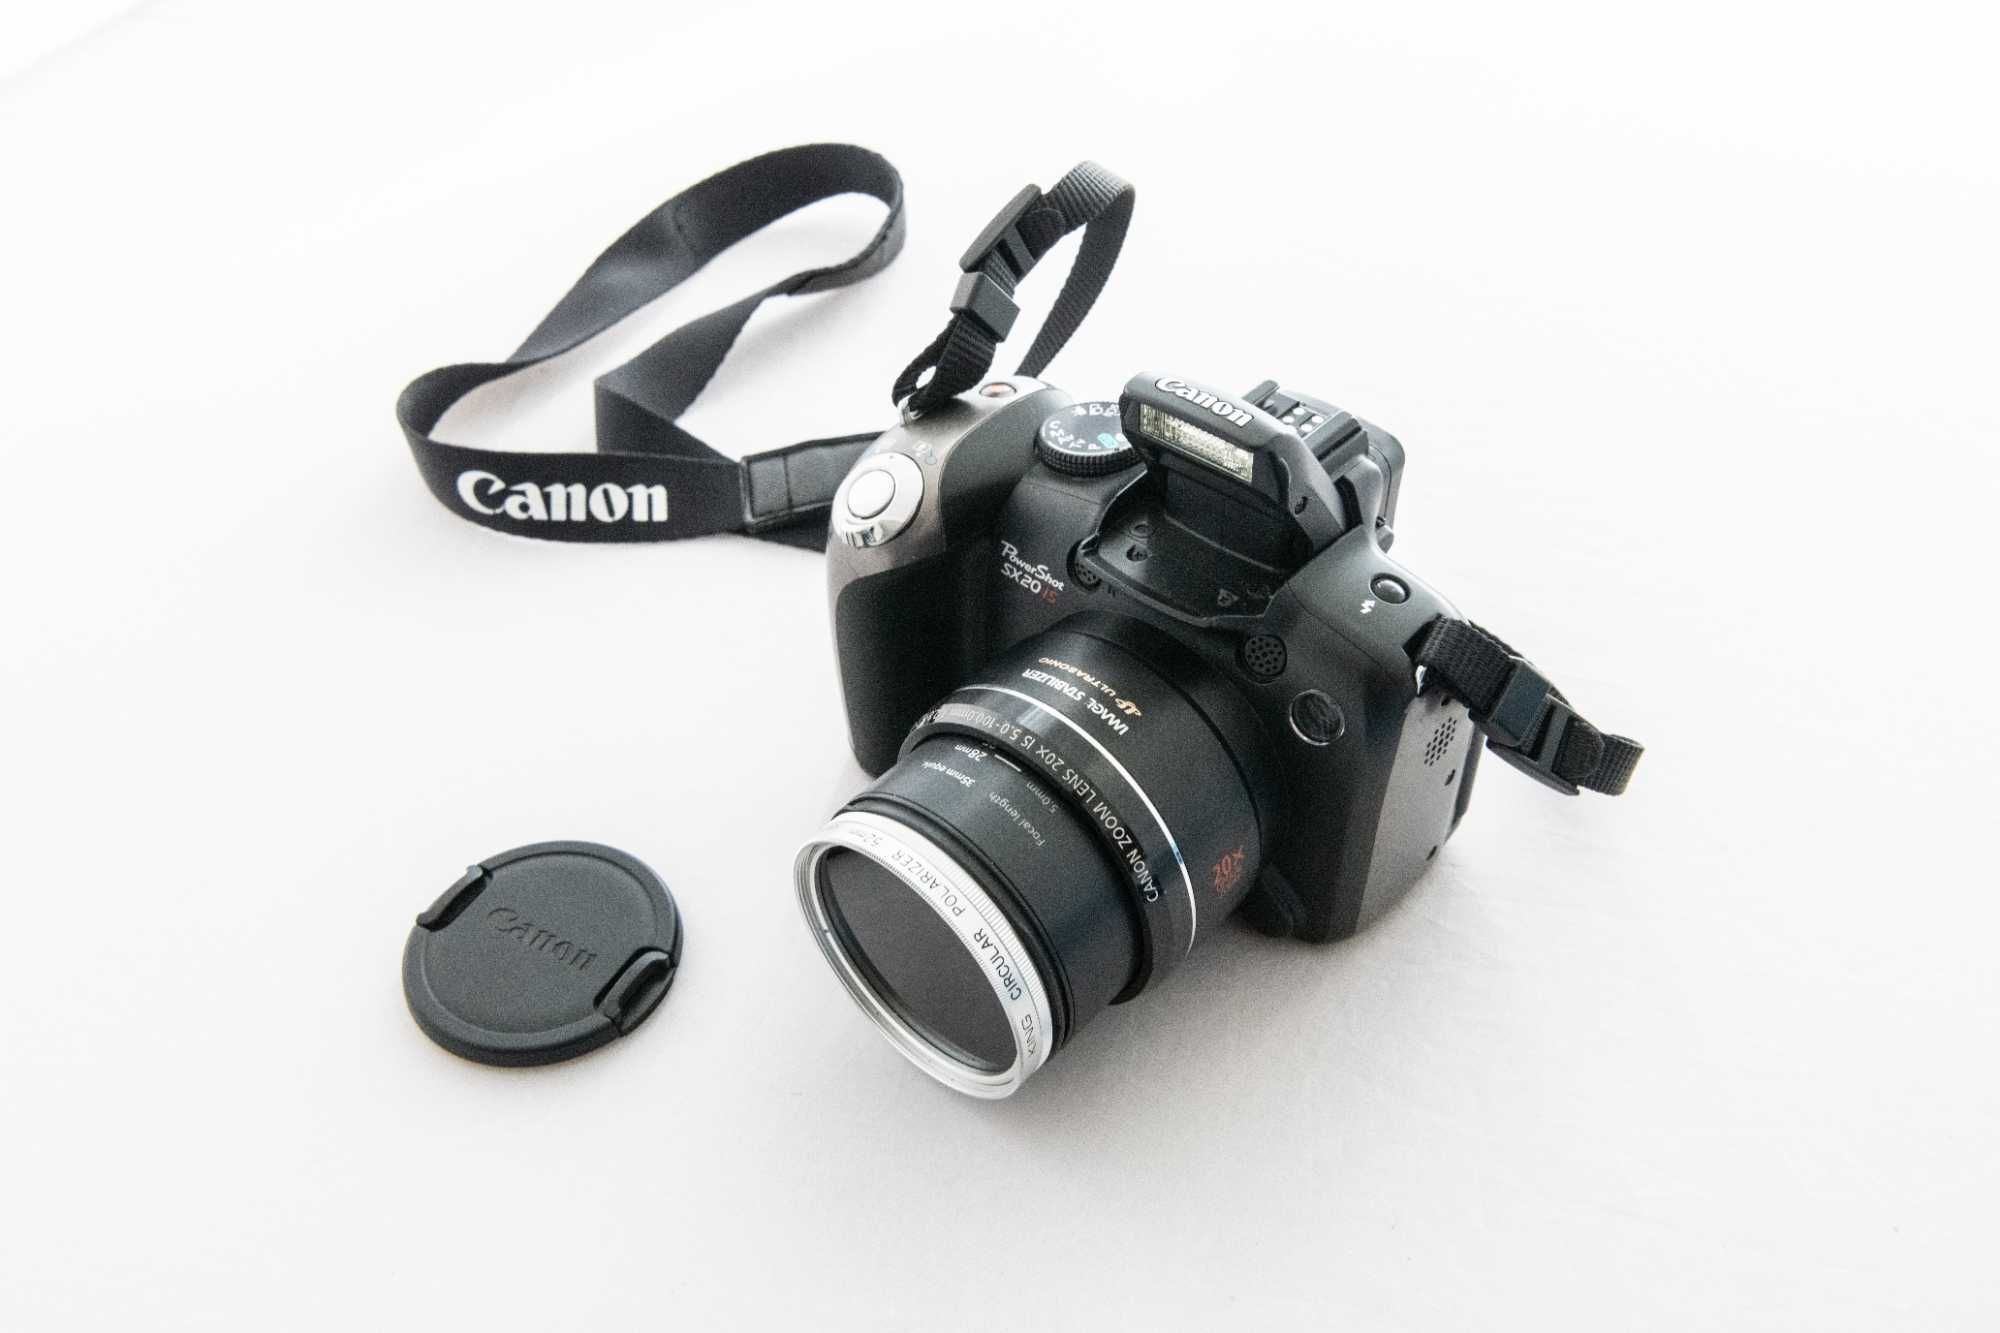 Aparat Canon PowerShot SX20 IS + karta 4GB + filtr polaryzacyjny